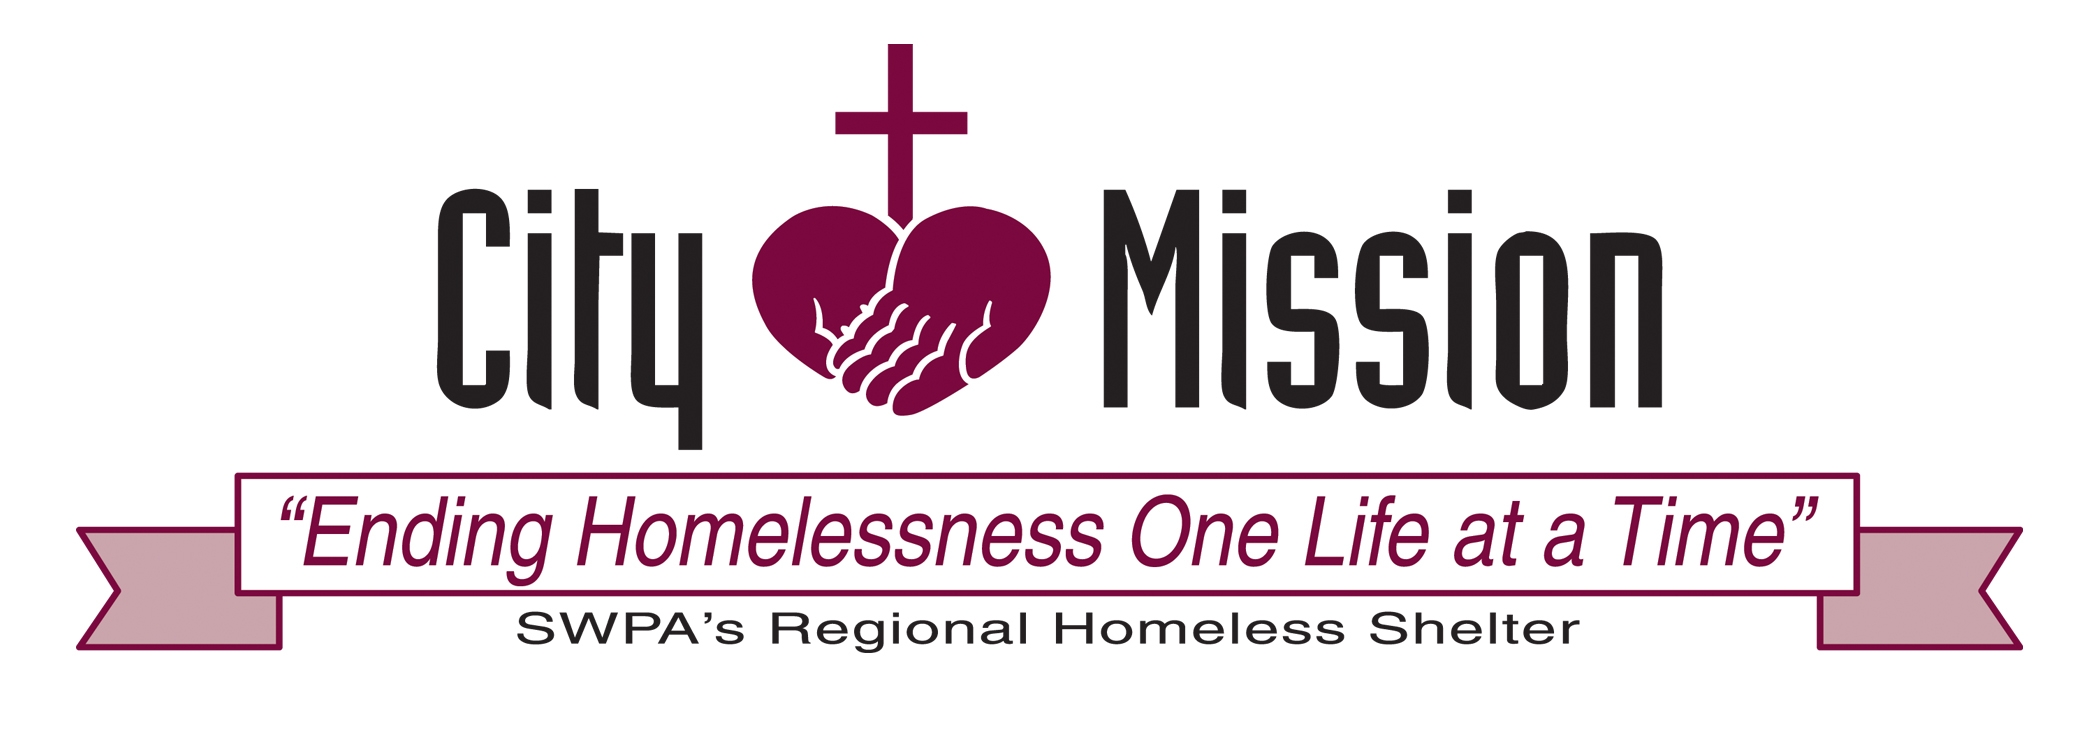 Washington City Mission logo